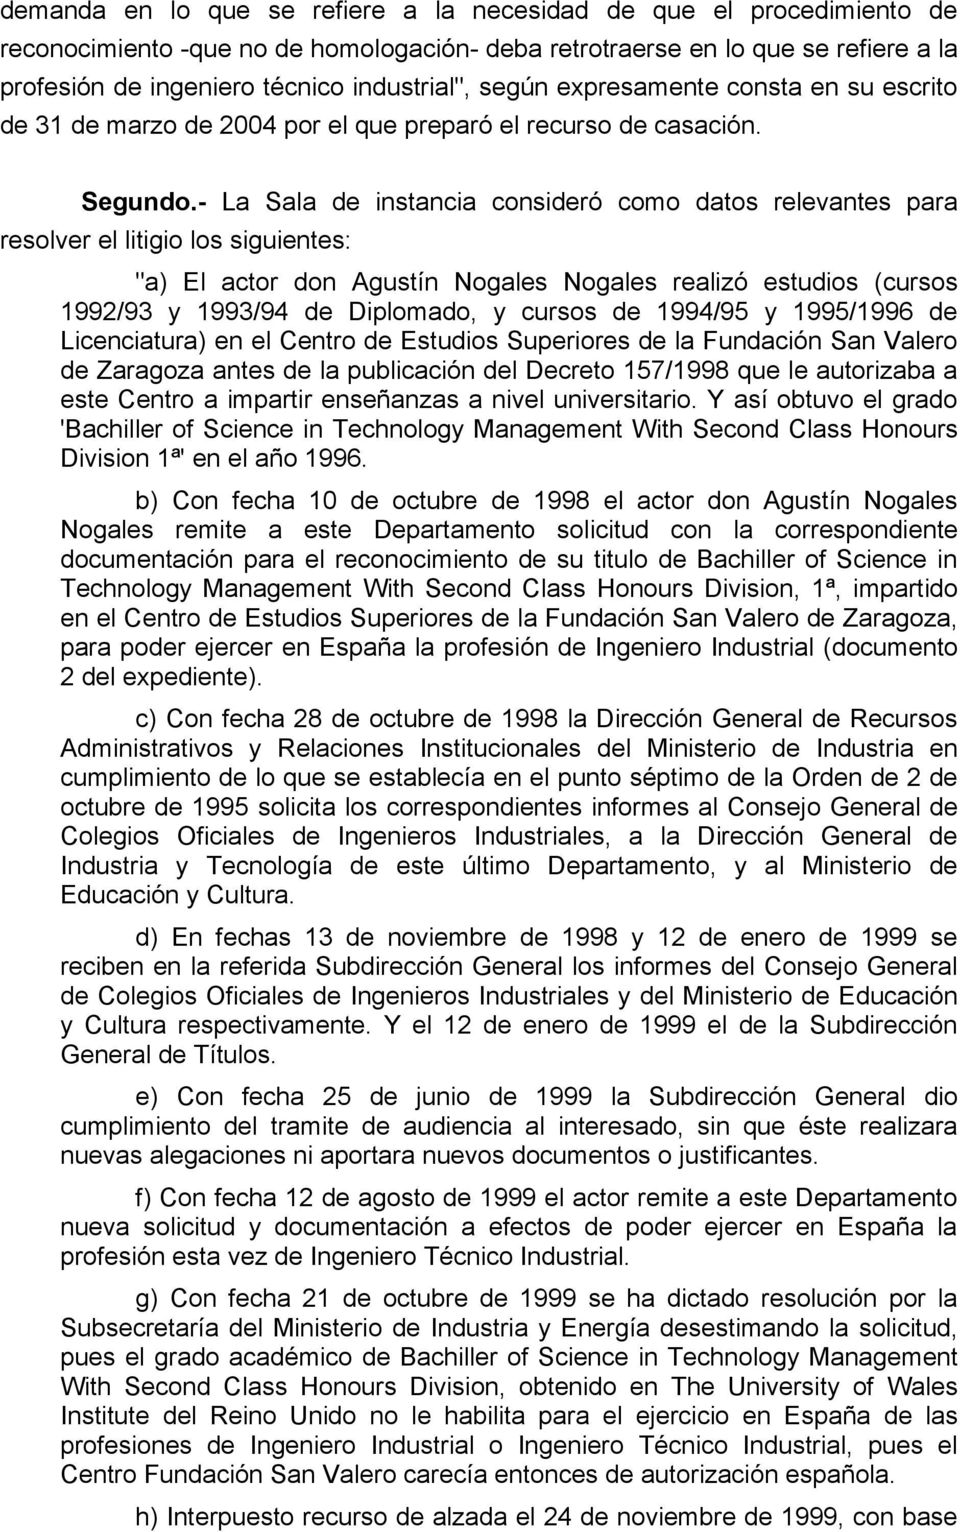 - La Sala de instancia consideró como datos relevantes para resolver el litigio los siguientes: "a) El actor don Agustín Nogales Nogales realizó estudios (cursos 1992/93 y 1993/94 de Diplomado, y